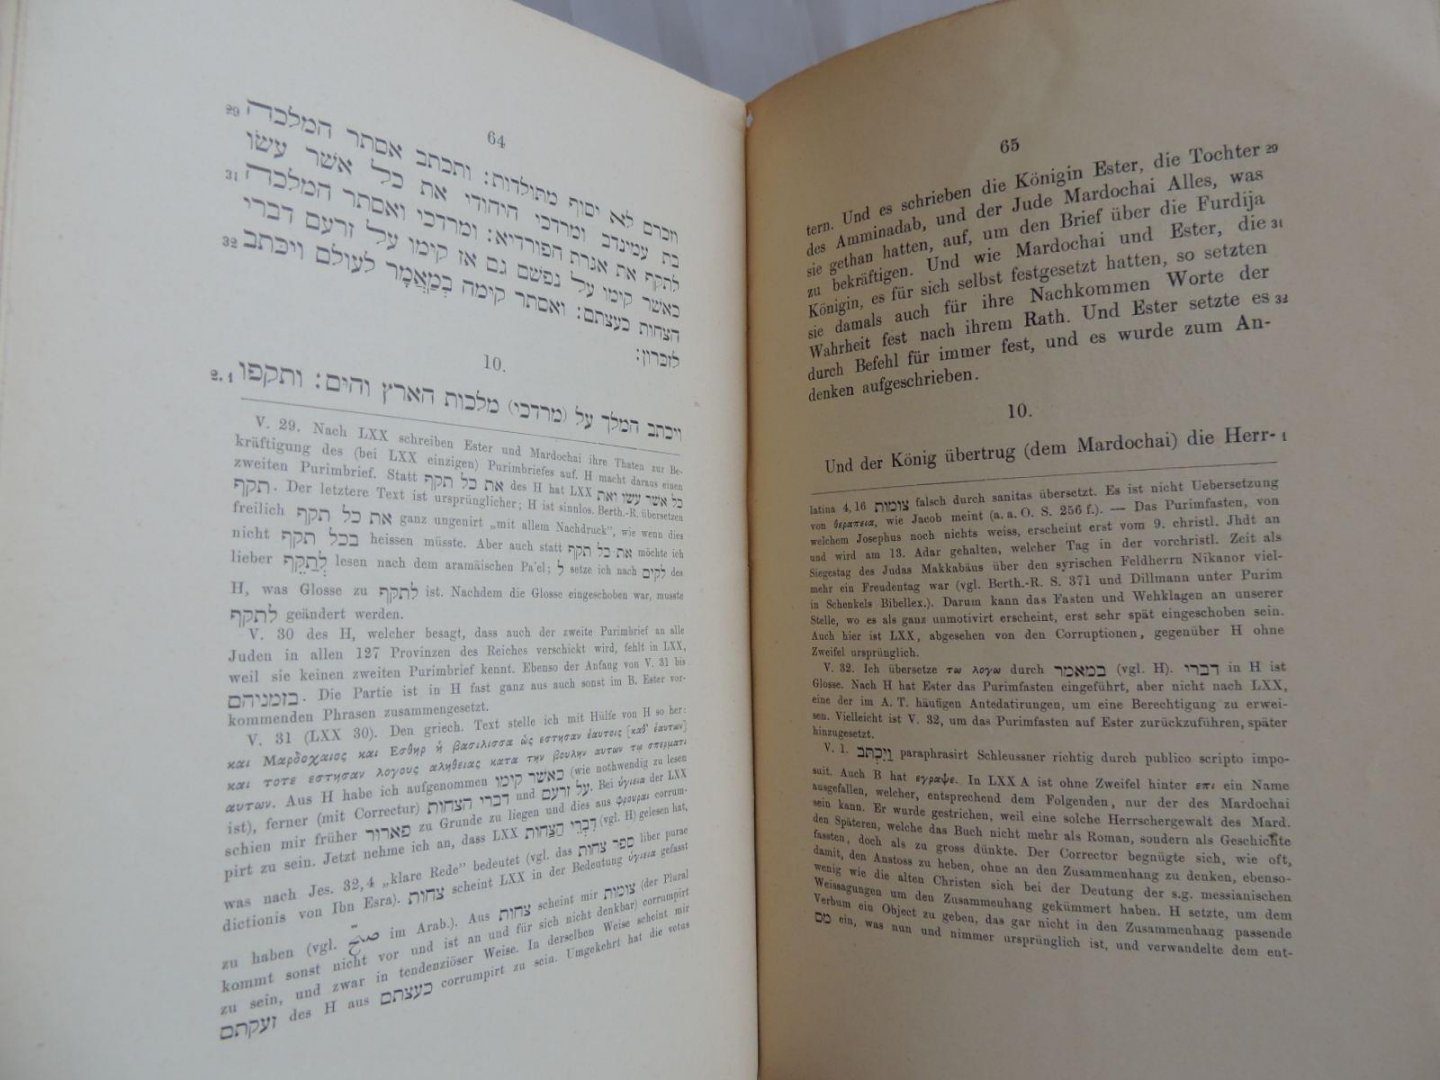 Jahn G. Gustav - Das Buch Ester : nach der Septuaginta hergestellt, übersetzt und kritisch erklart von G. Jahn